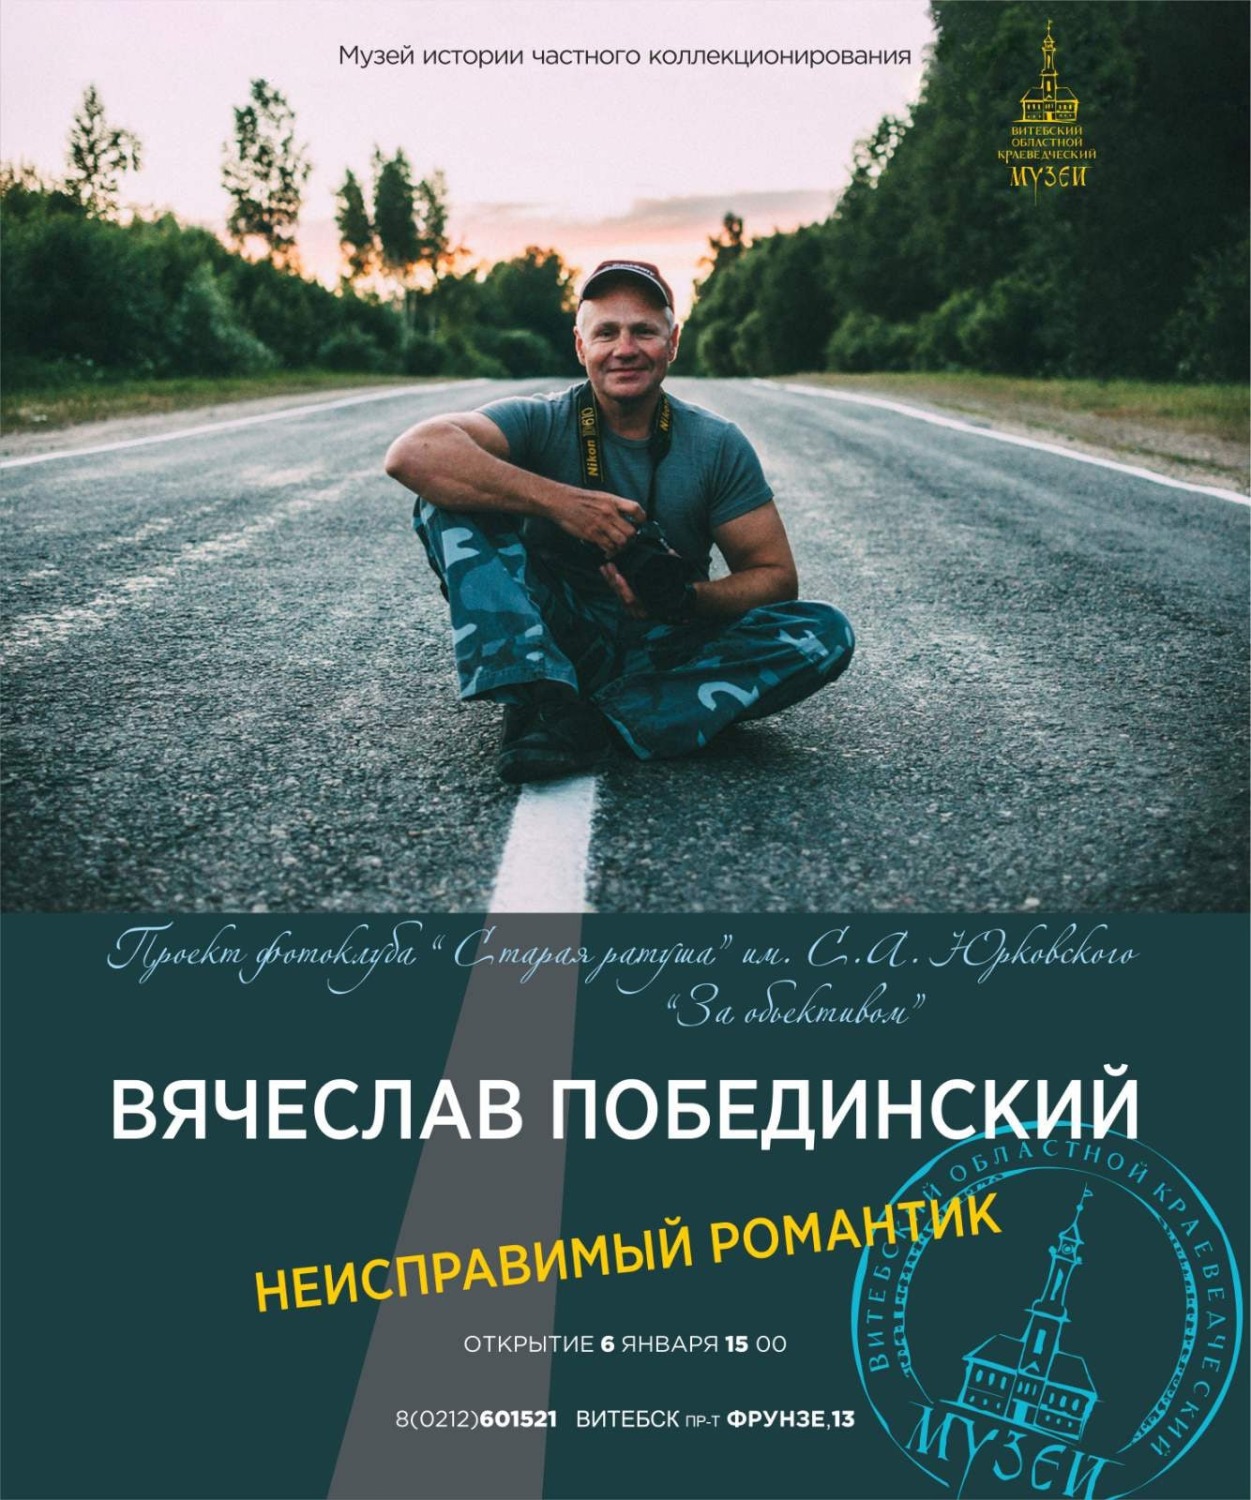 В Витебске состоится персональная выставка фотографа Вячеслава Побединского?